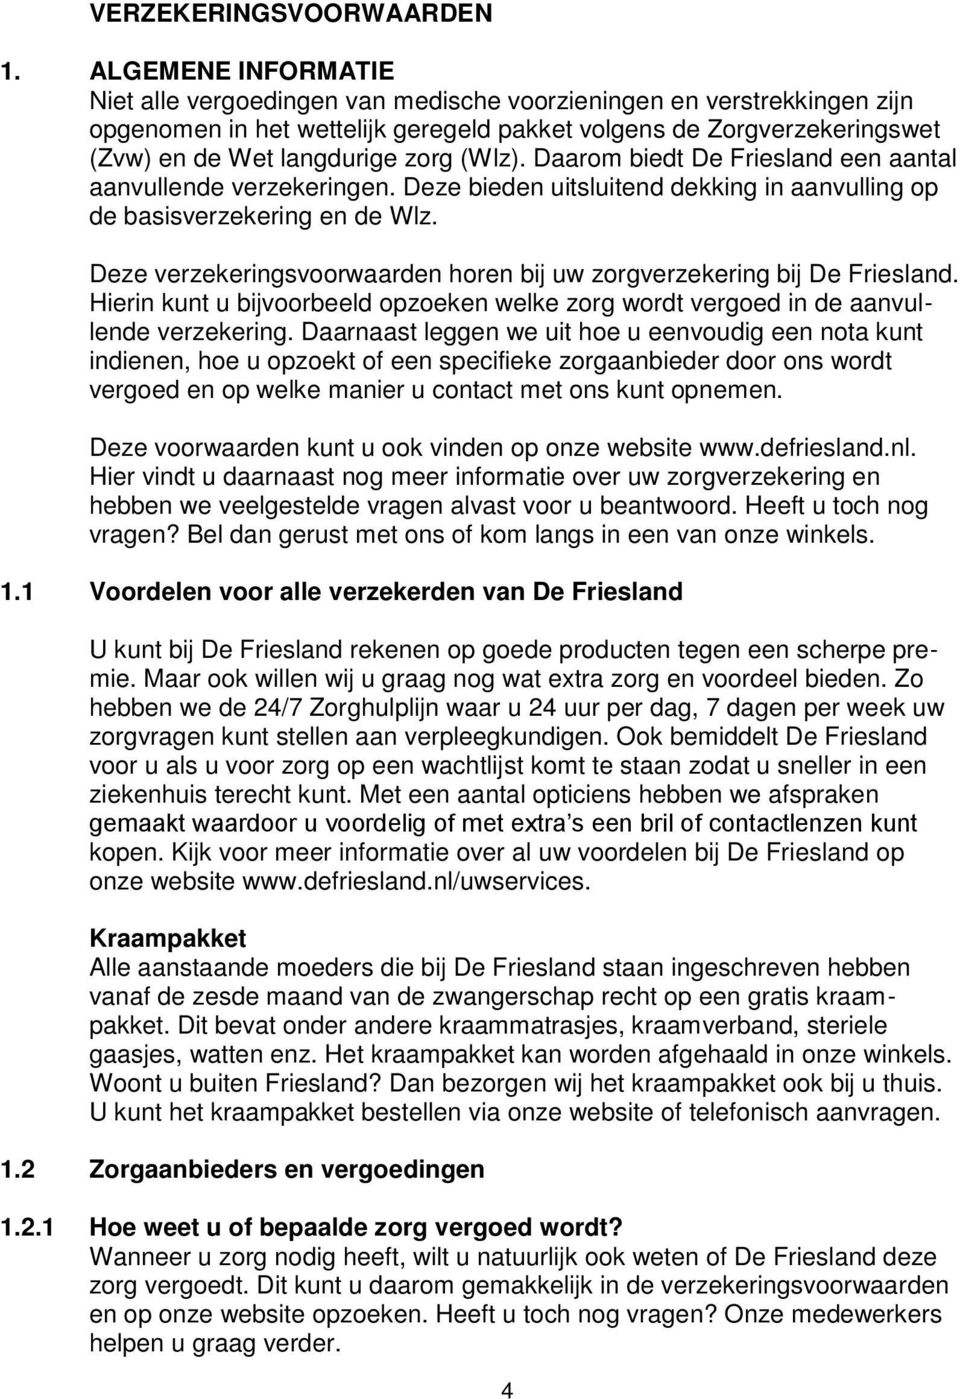 (Wlz). Daarom biedt De Friesland een aantal aanvullende verzekeringen. Deze bieden uitsluitend dekking in aanvulling op de basisverzekering en de Wlz.